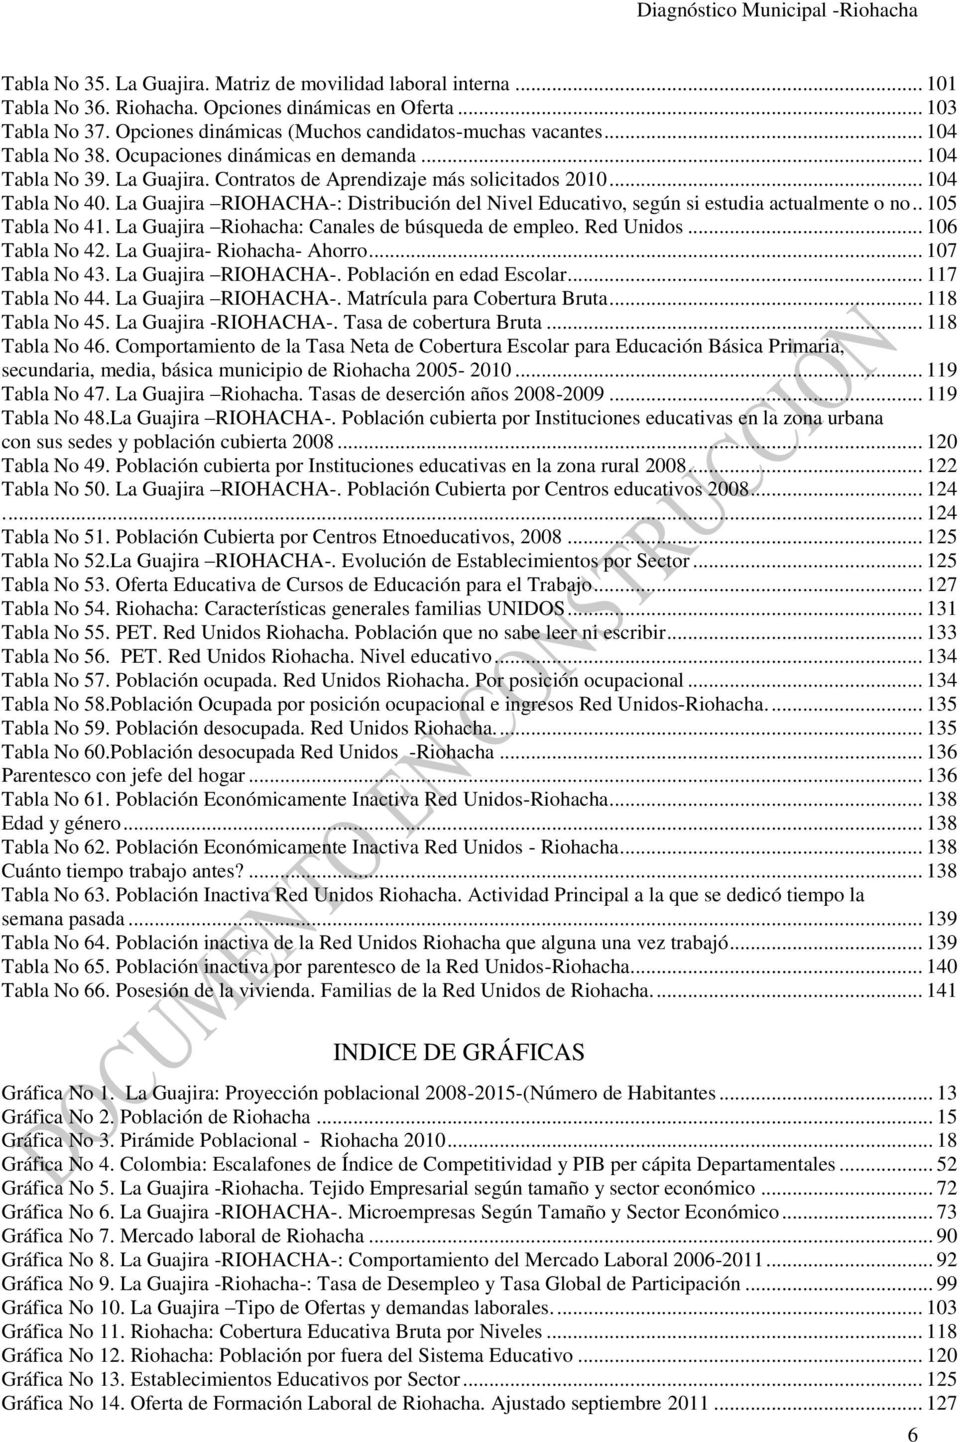 La Guajira RIOHACHA-: Distribución del Nivel Educativo, según si estudia actualmente o no.. 105 Tabla No 41. La Guajira Riohacha: Canales de búsqueda de empleo. Red Unidos... 106 Tabla No 42.